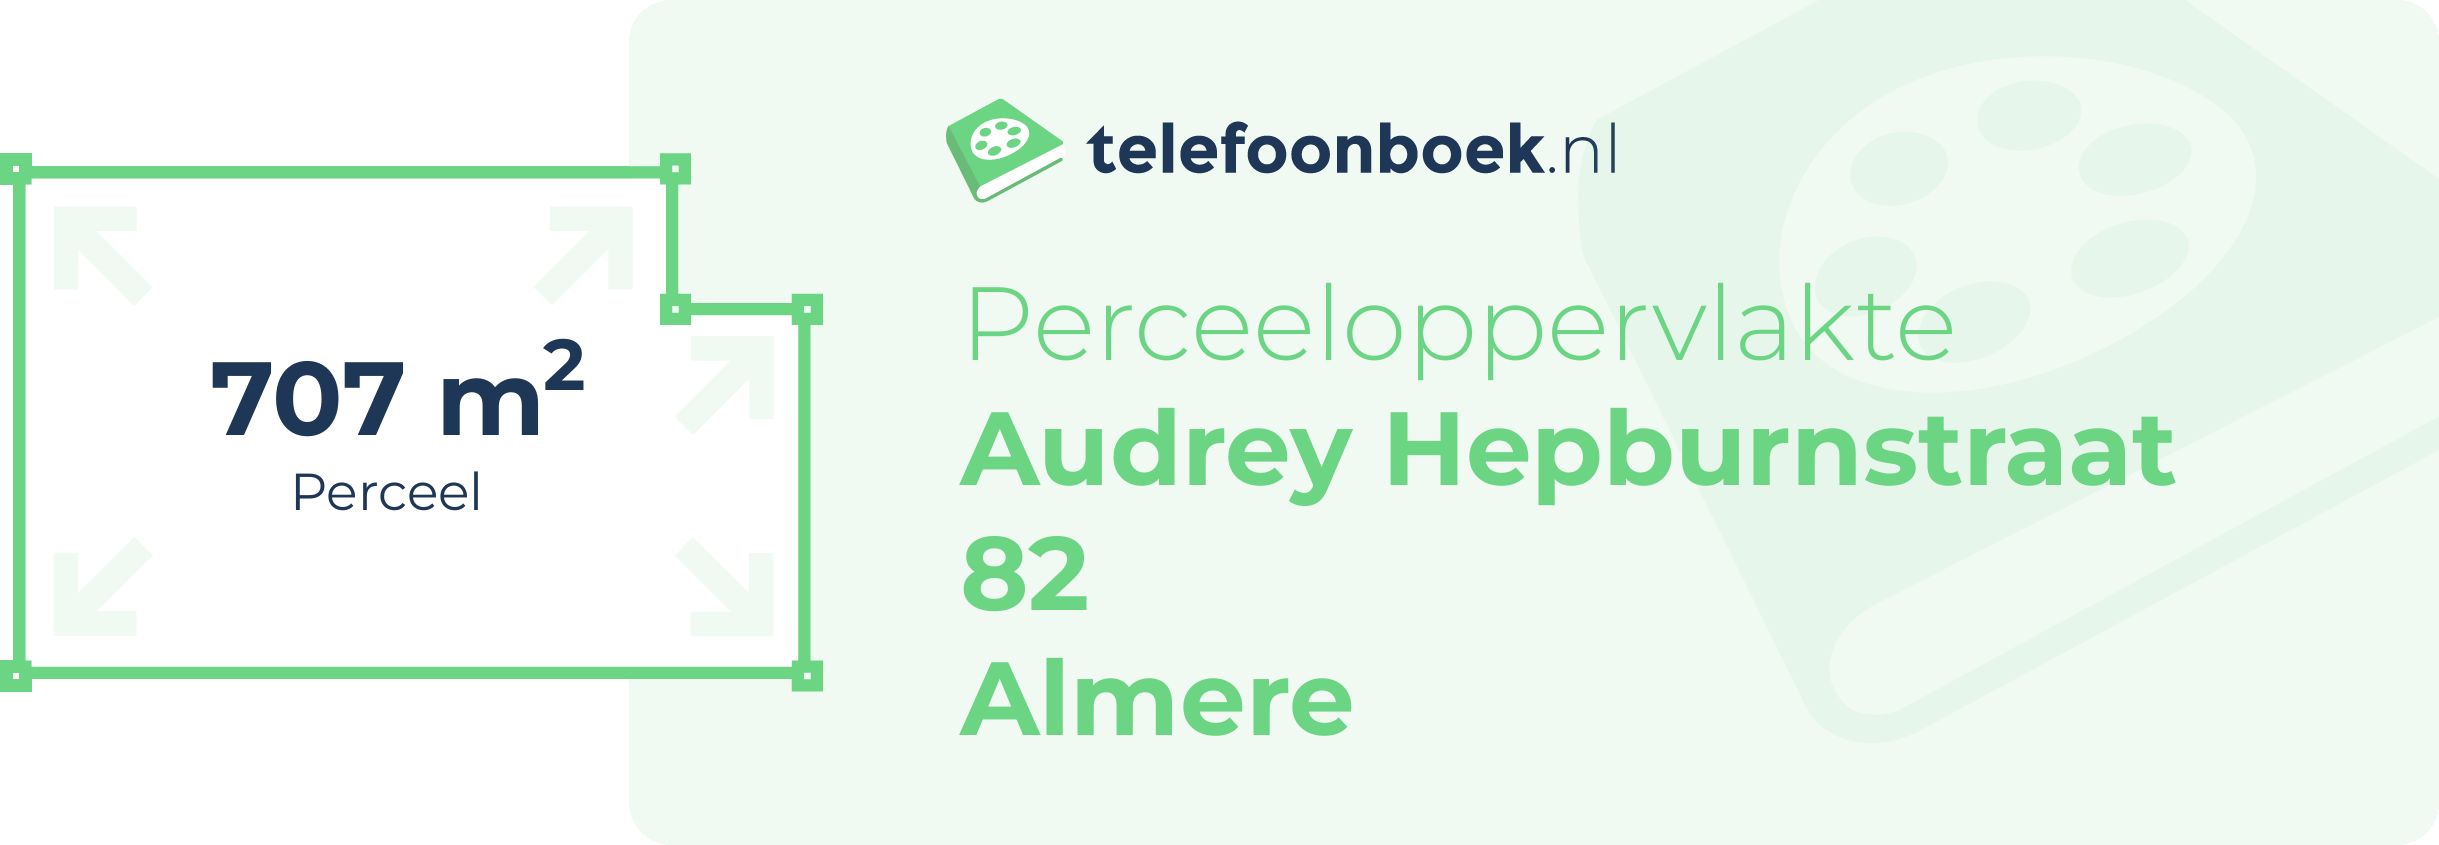 Perceeloppervlakte Audrey Hepburnstraat 82 Almere